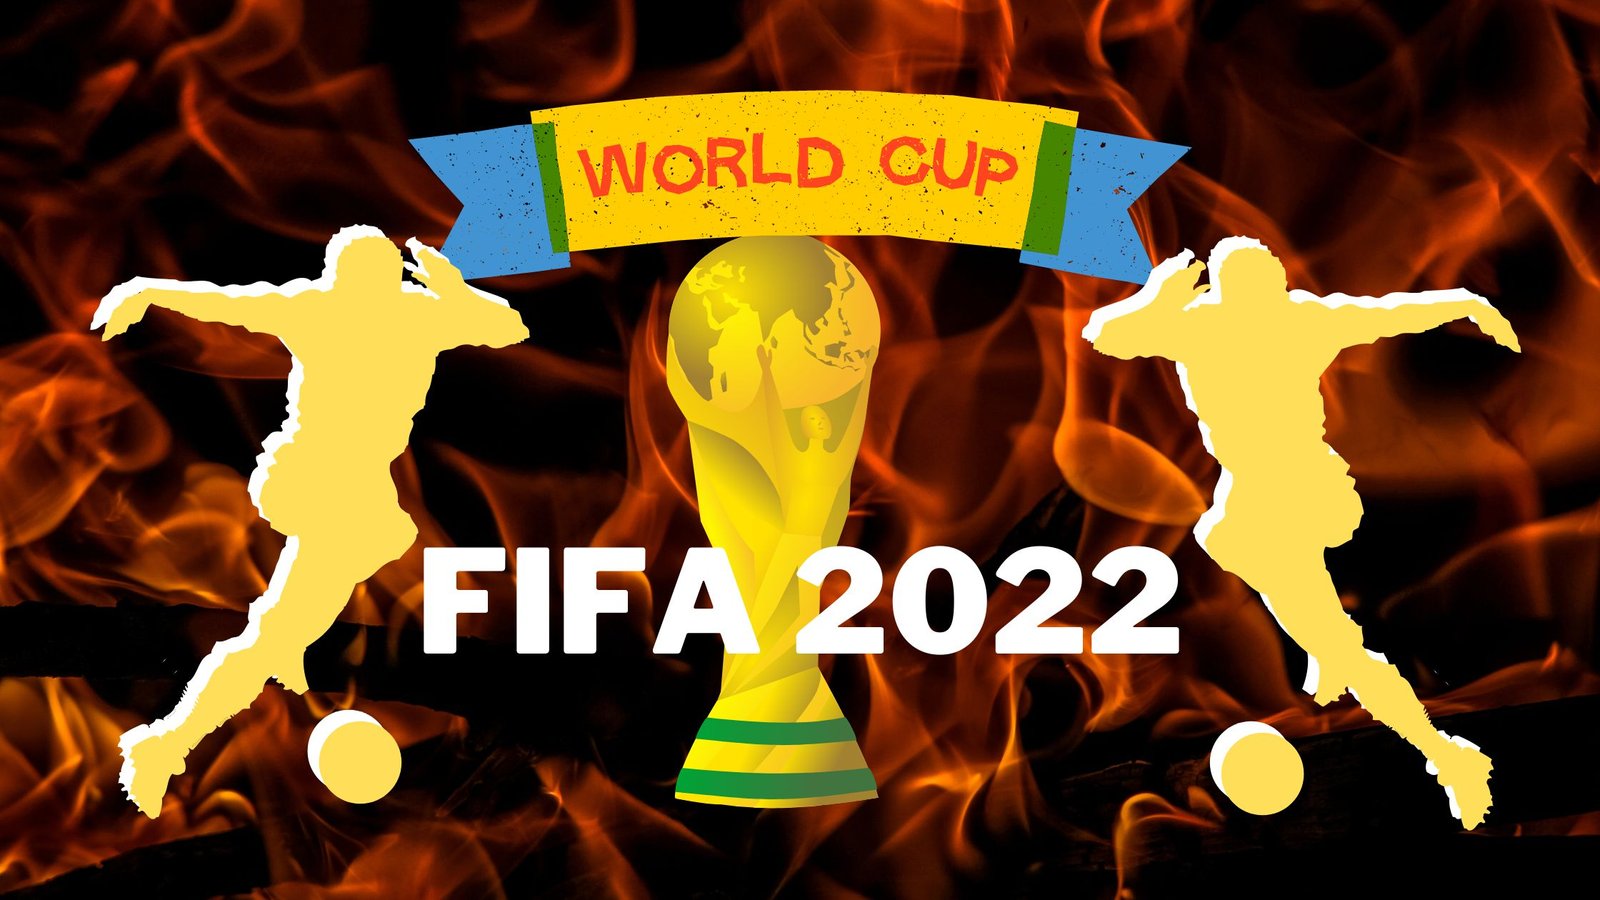 Fifa World Cup 2022 फीफा विश्व कप 2022 कतर टूर्नामेंट के लिए तिथियां ड्रा शेड्यूल किक ऑफ 